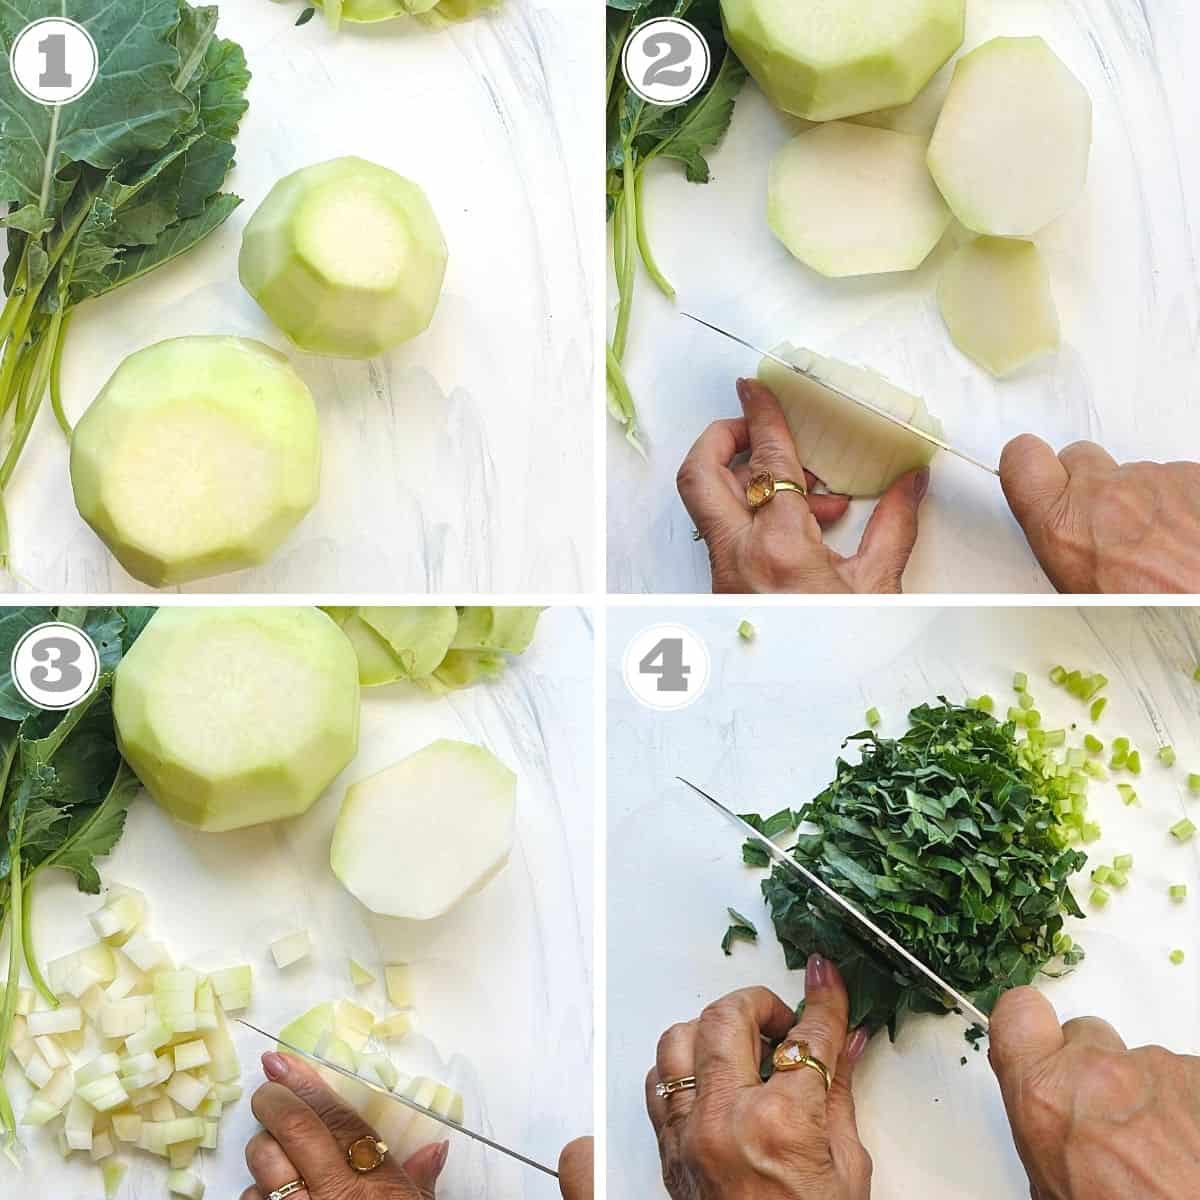 photos one through four showing how to prepare kohlrabi 